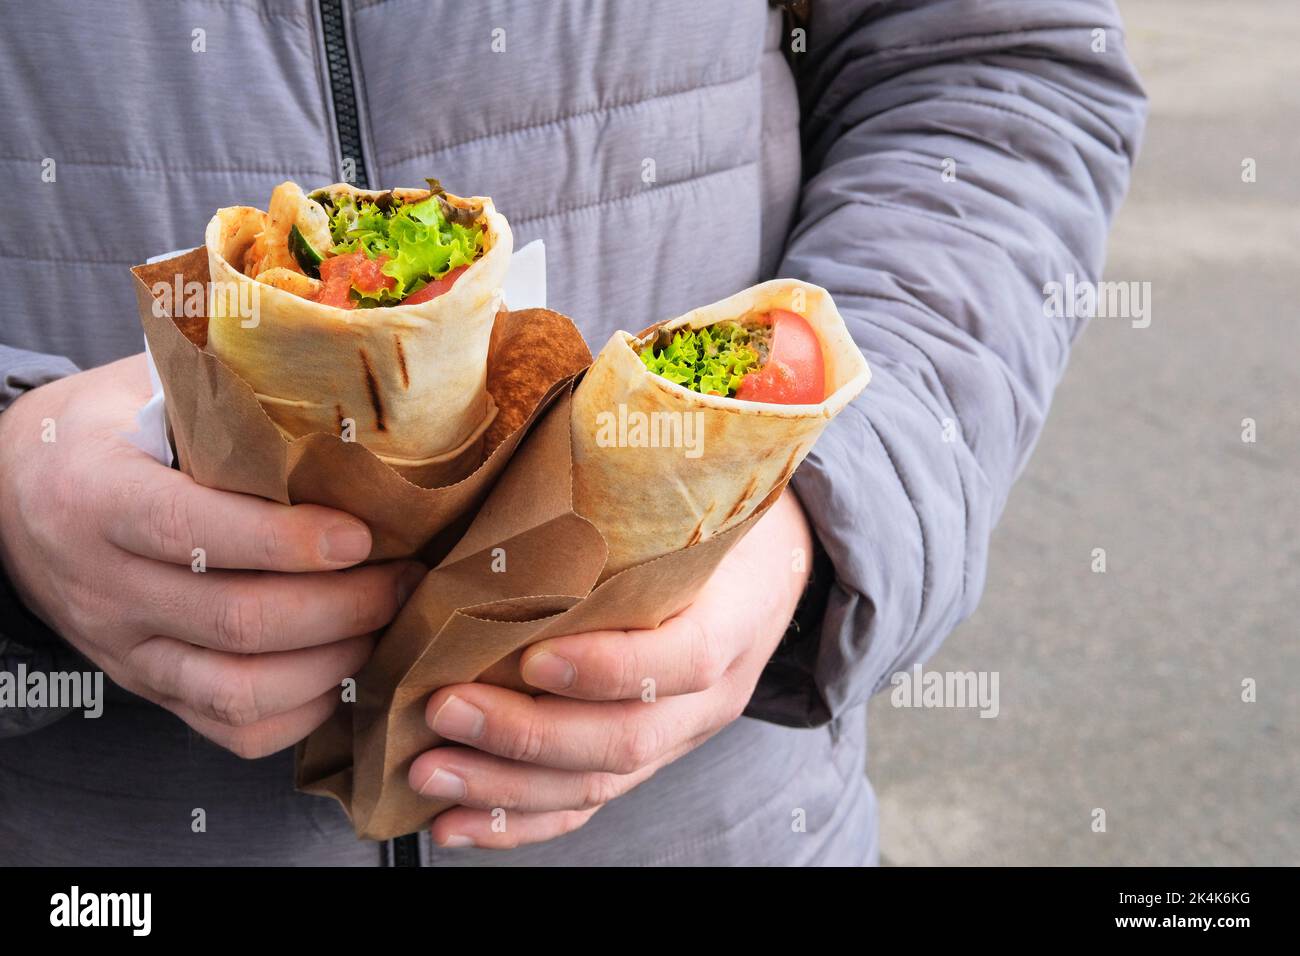 Shawarma zum Mitnehmen. Gebratenes Fleisch mit Gemüse und Sauce. Fastfood zum Mittagessen. Die Hand hält zwei frische Fleischsorten in Pitabrot. Stockfoto